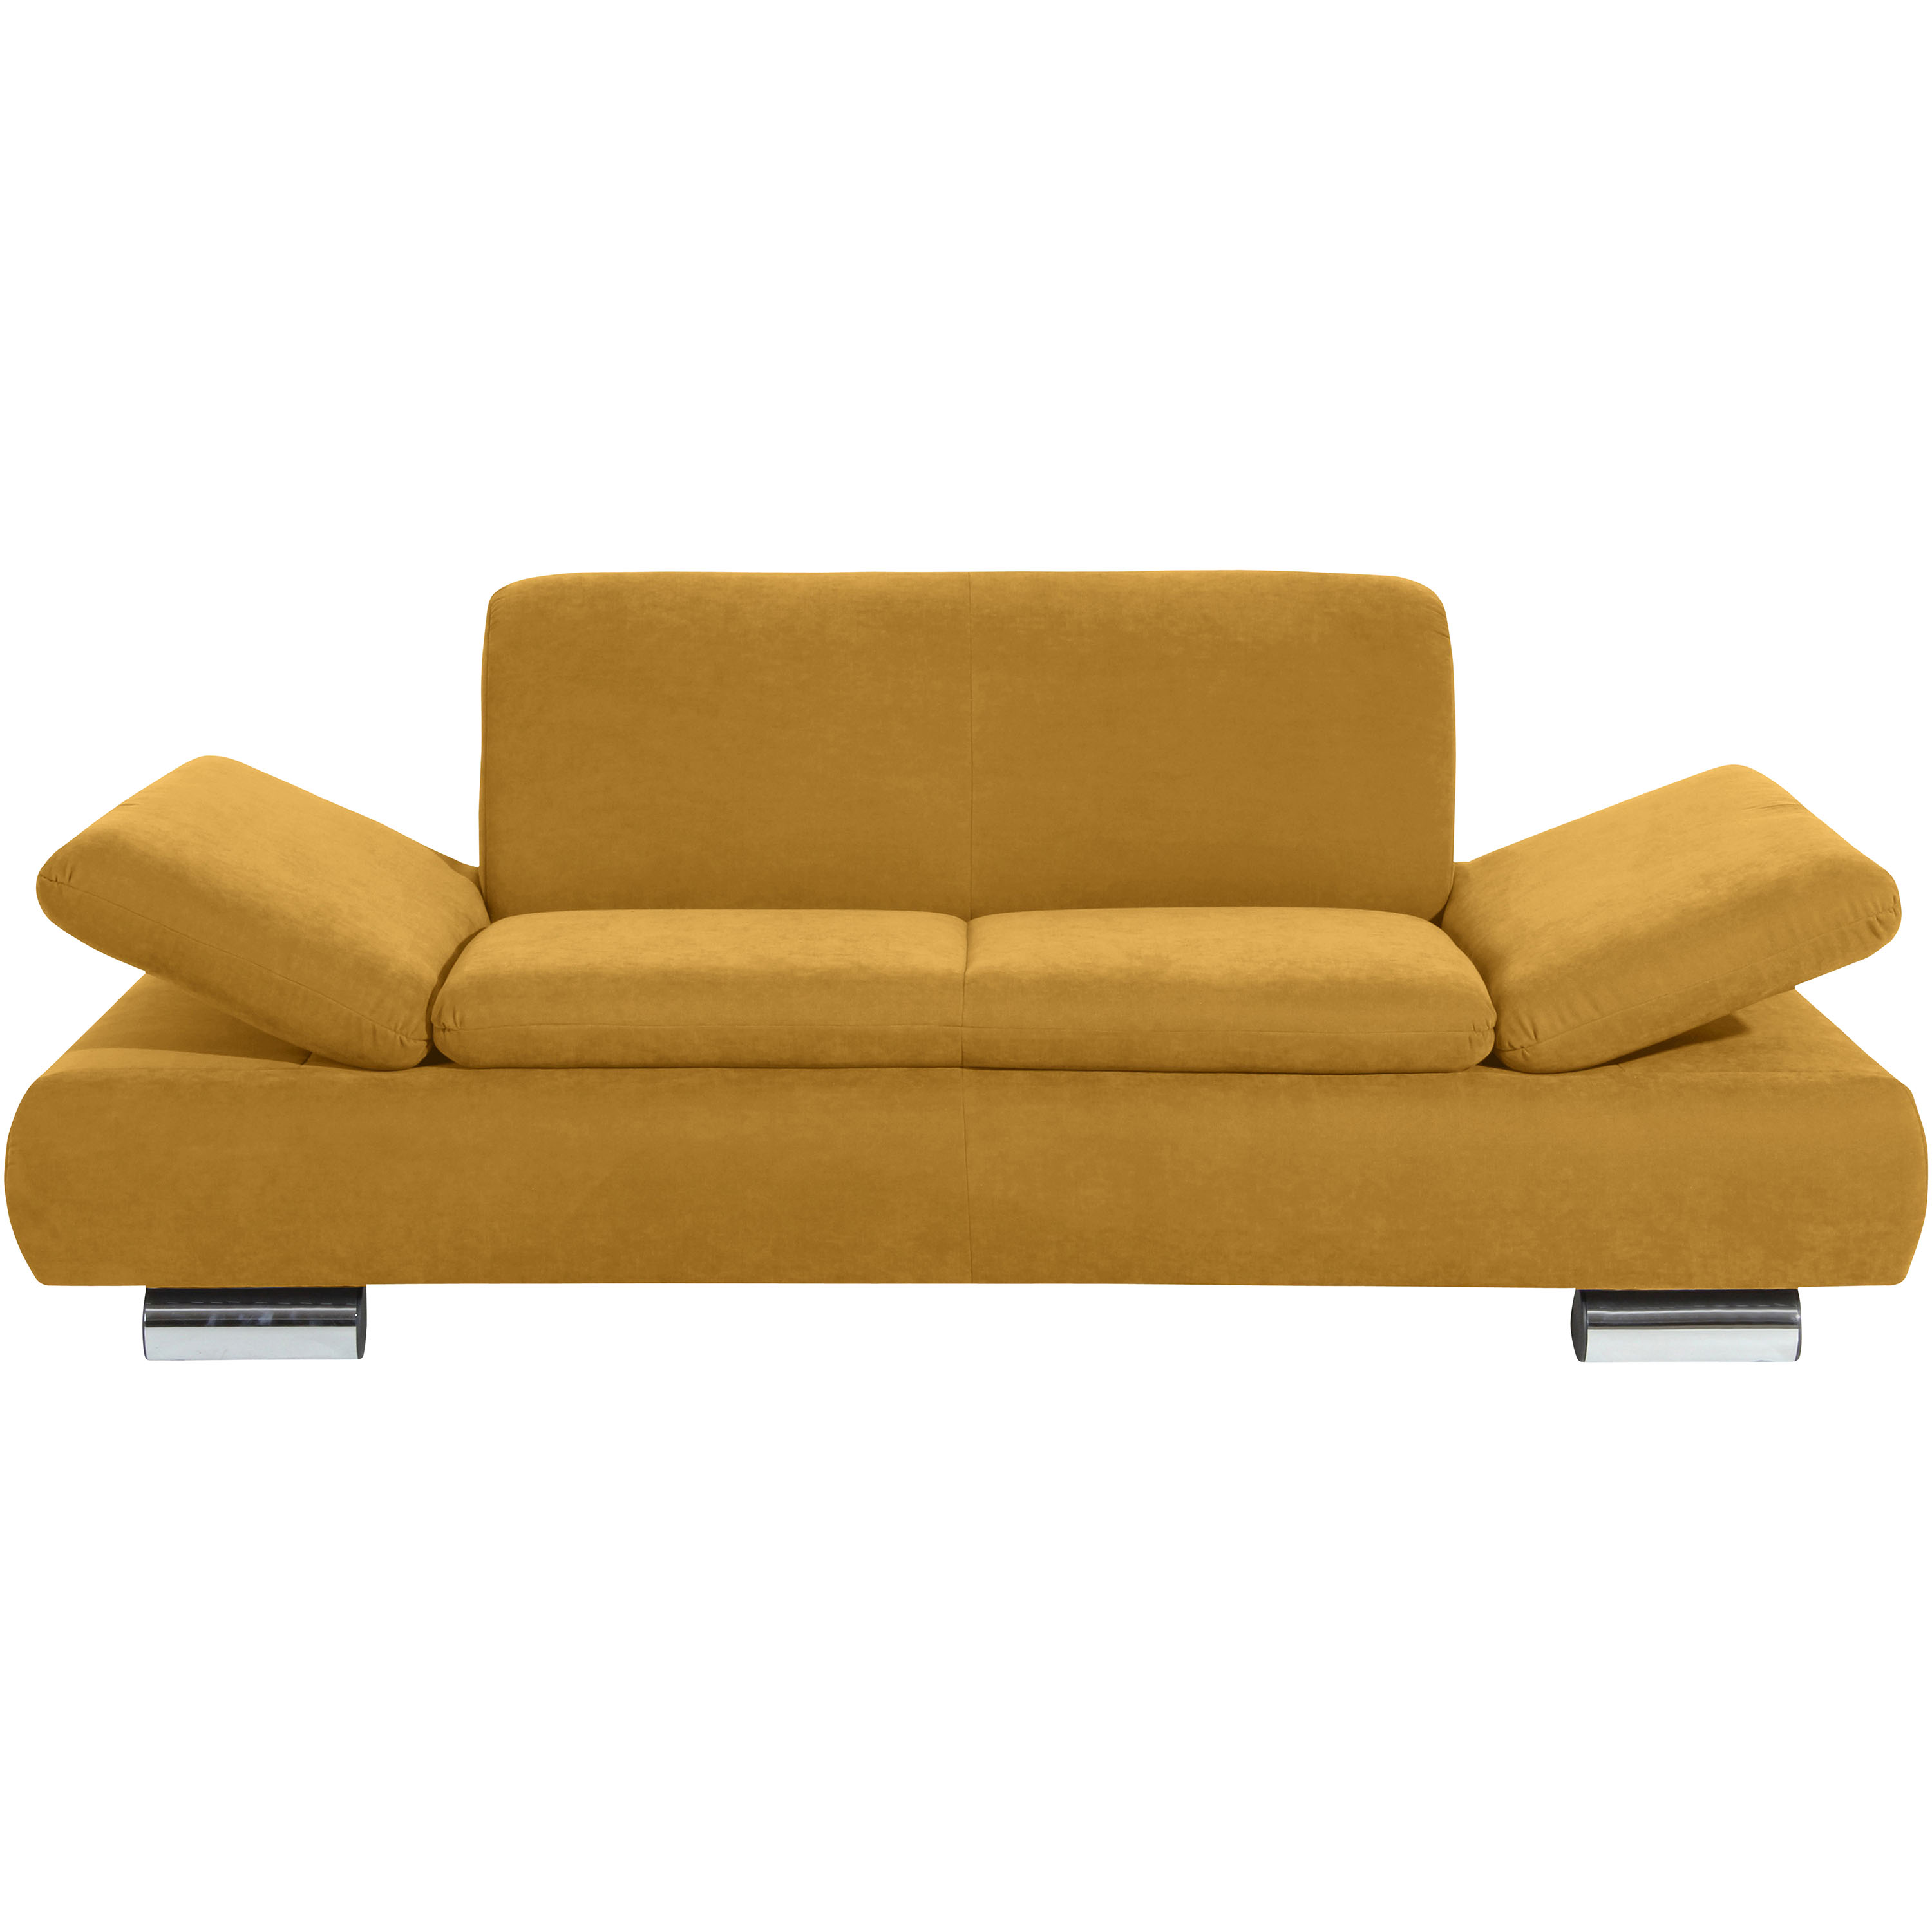 formschönes 2-sitzer sofa in mais mit hochgeklappten armteilen und verchromten metallfüssen